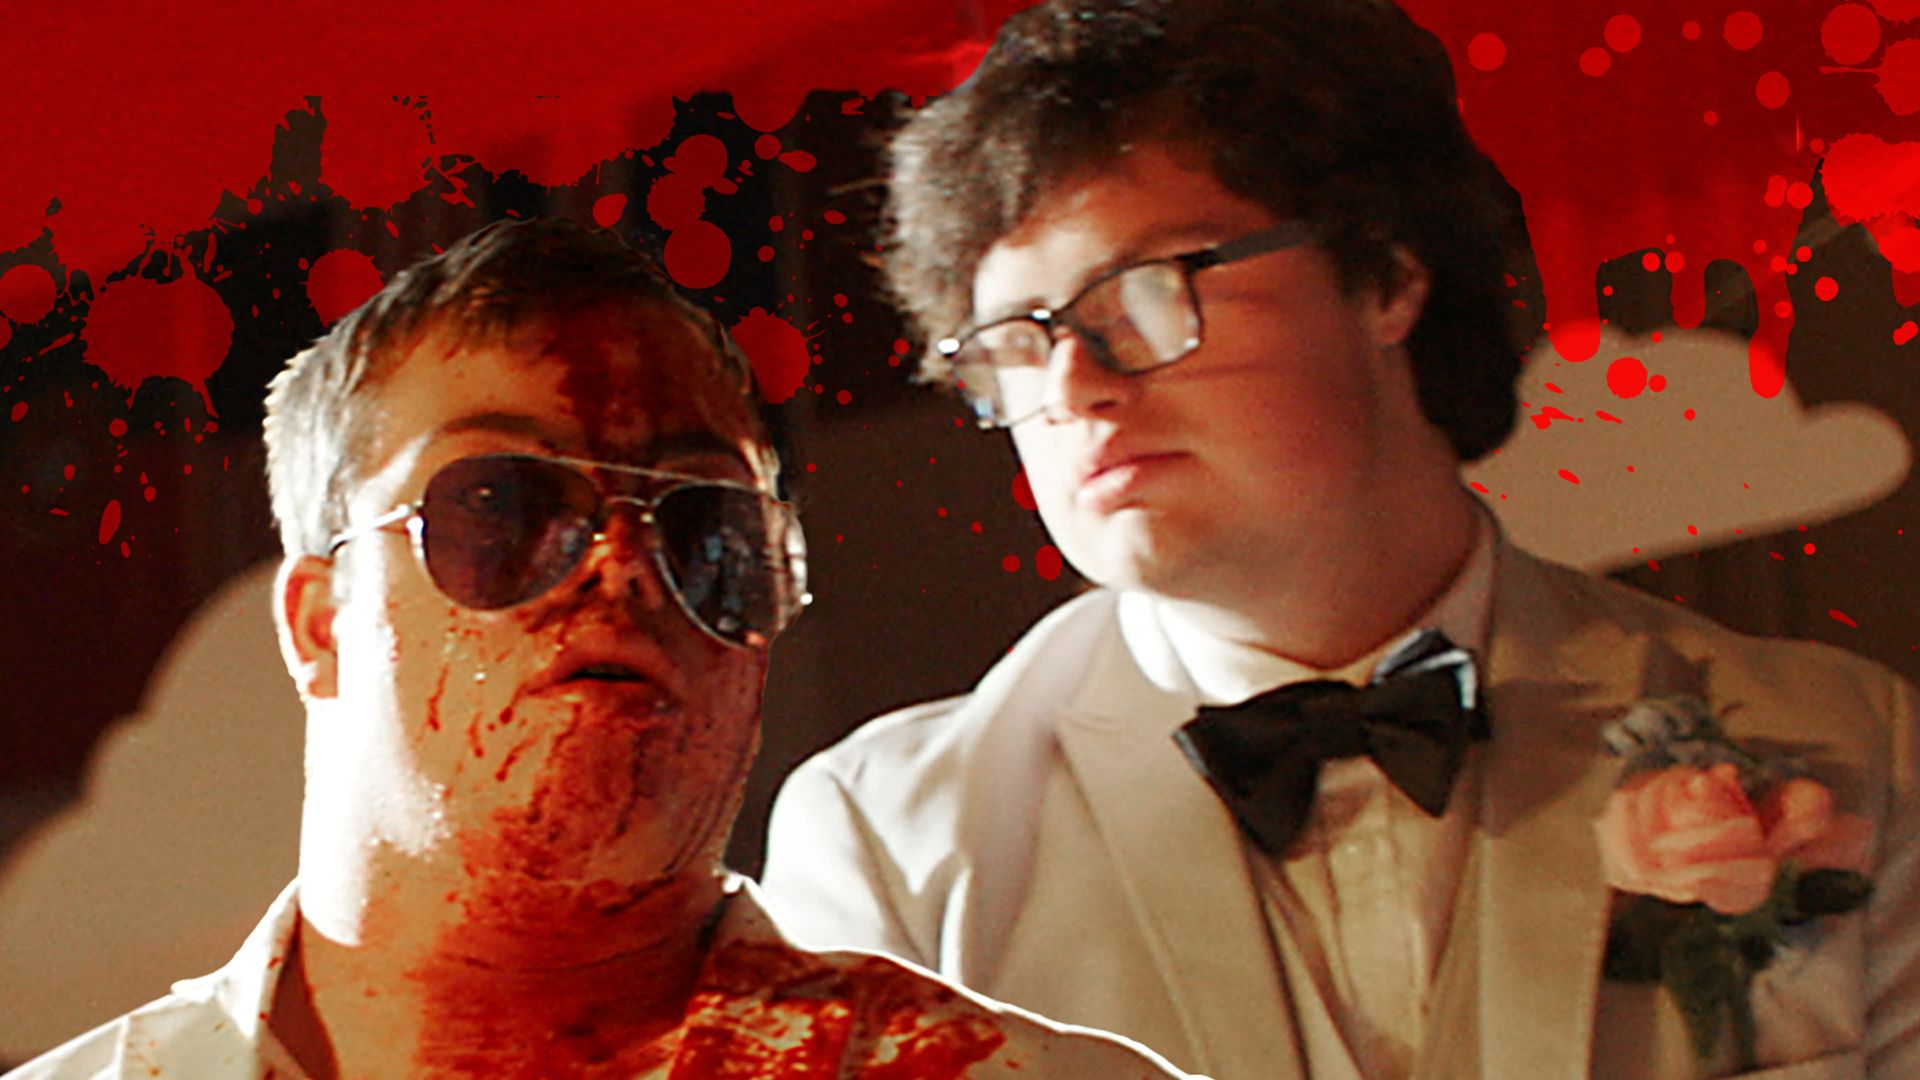 Sam & Mattie Make a Zombie Movie background